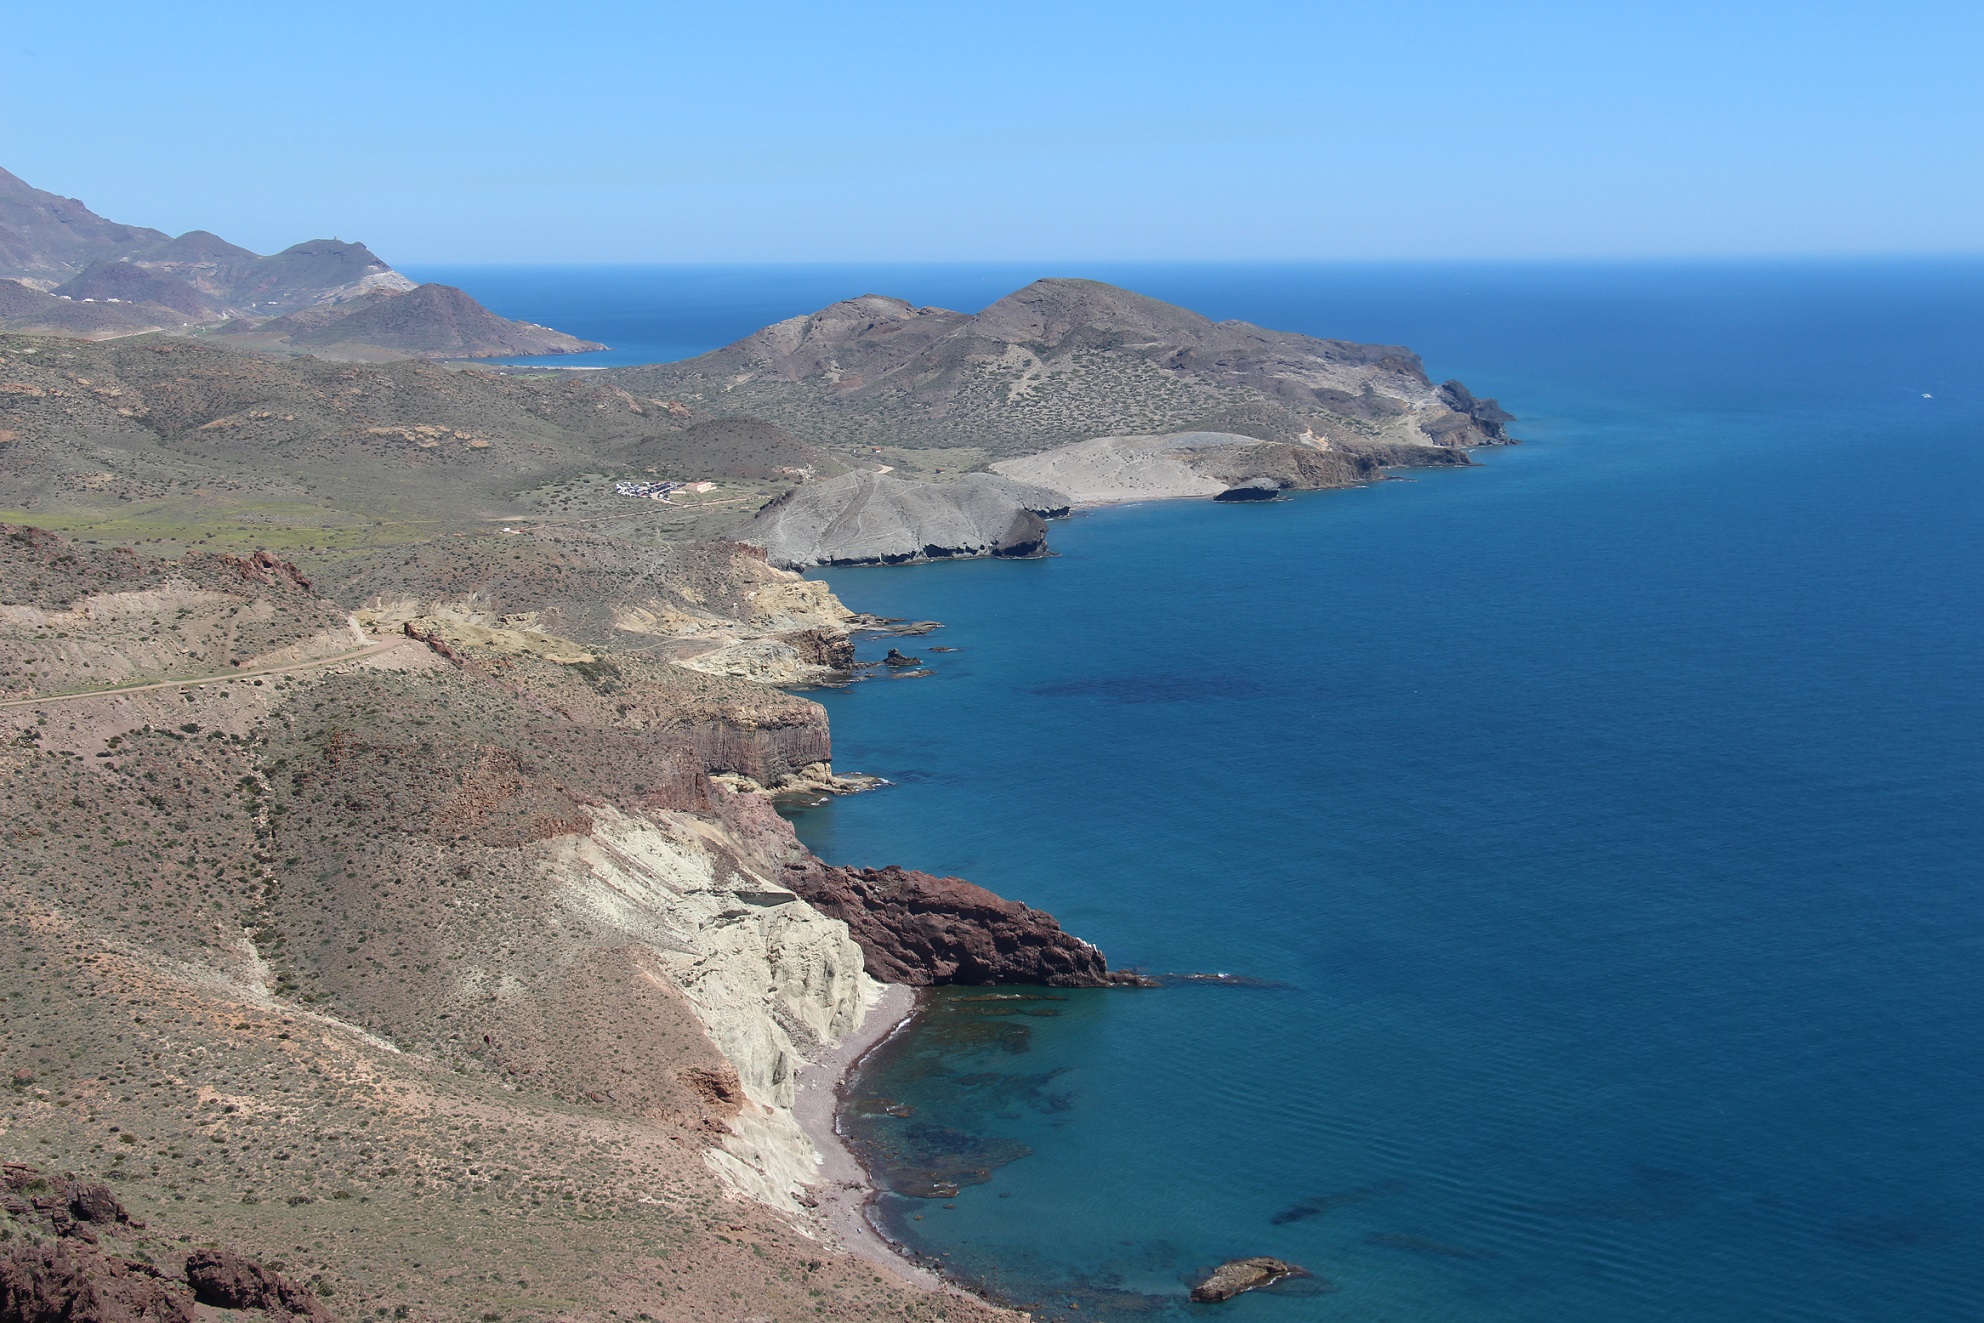 Costa del Parque Natural de Cabo de Gata - Níjar (Almeria)